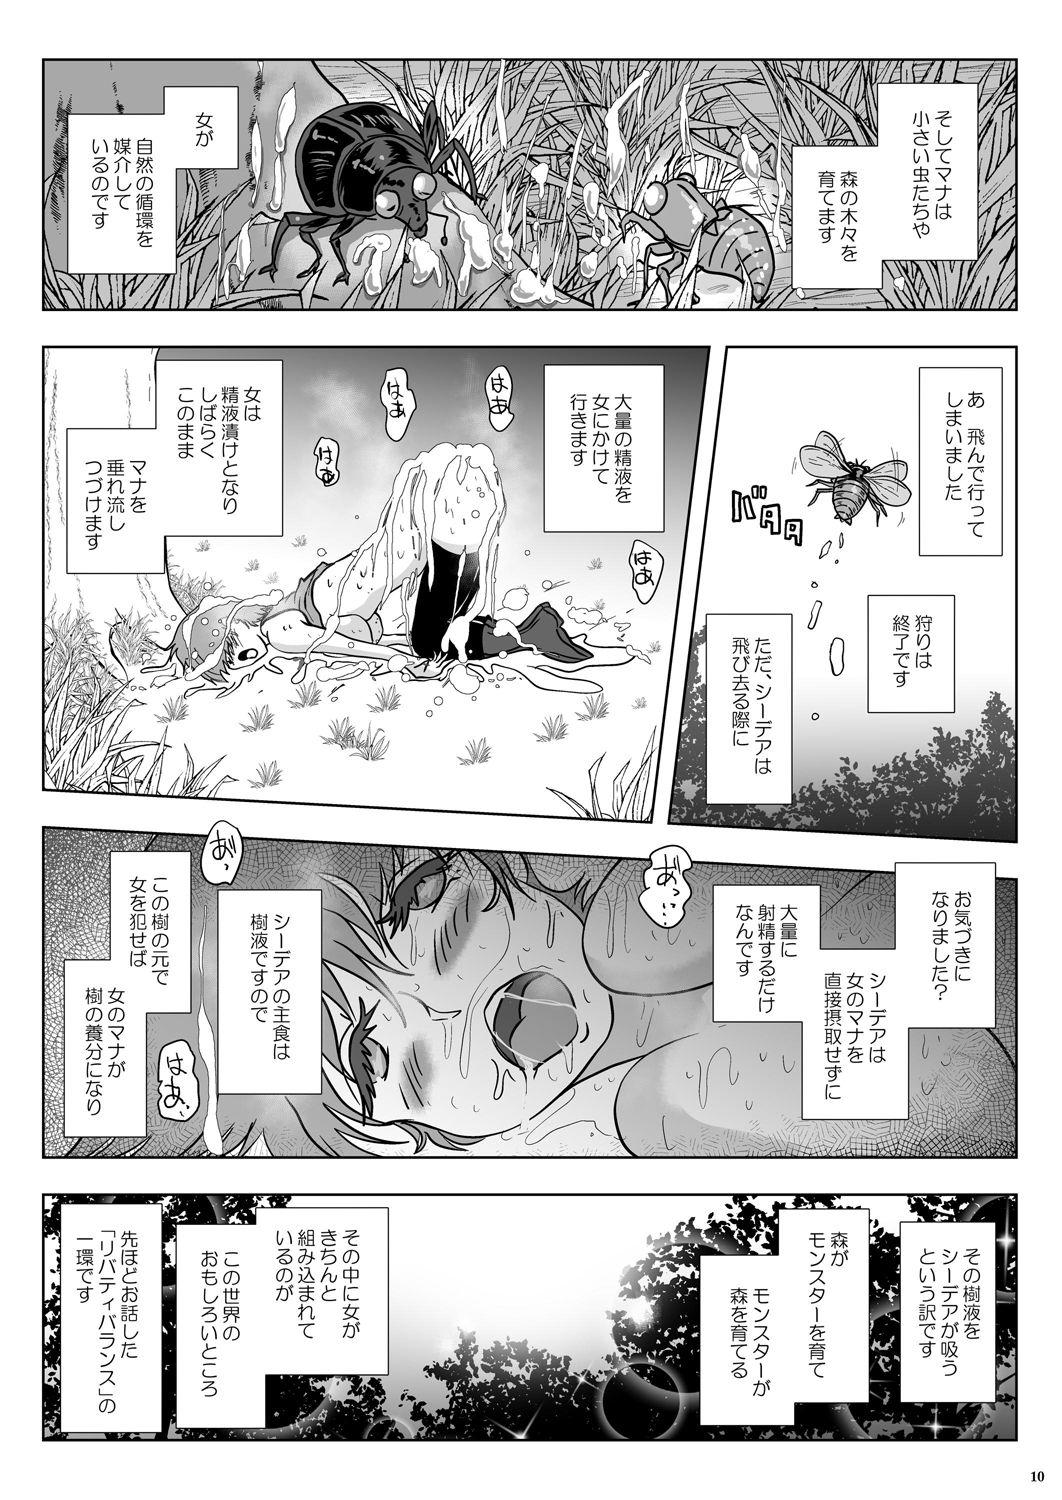 Chica Go To Larvataurs #02 "Hokaku Chuunyuu Nakadashi Mushi no Miyako" Oriental - Page 10